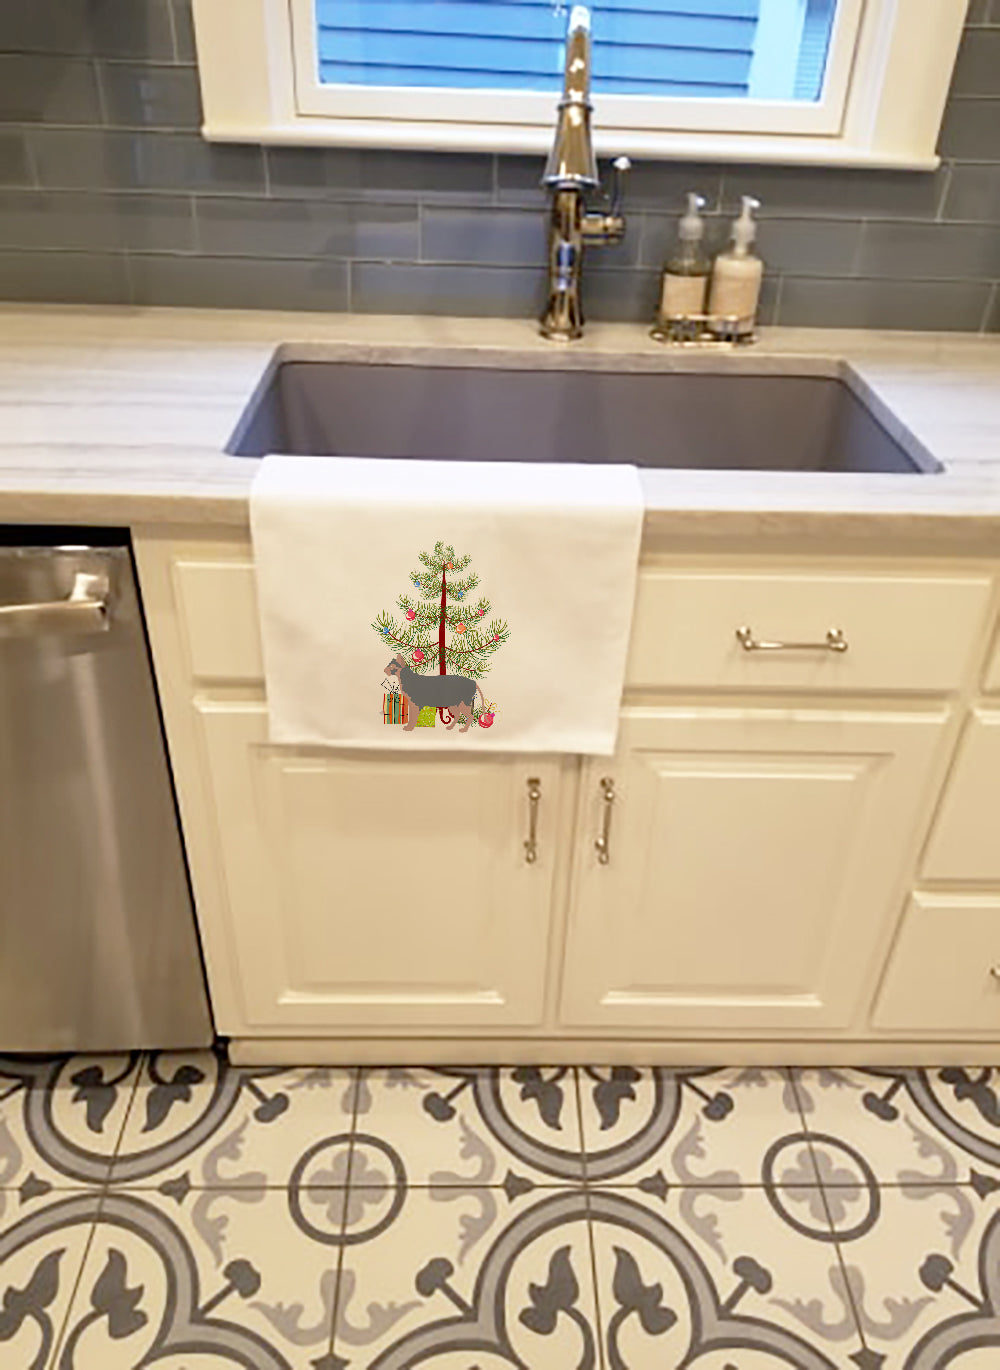 Buy this Lykoi #3 Cat Merry Christmas White Kitchen Towel Set of 2